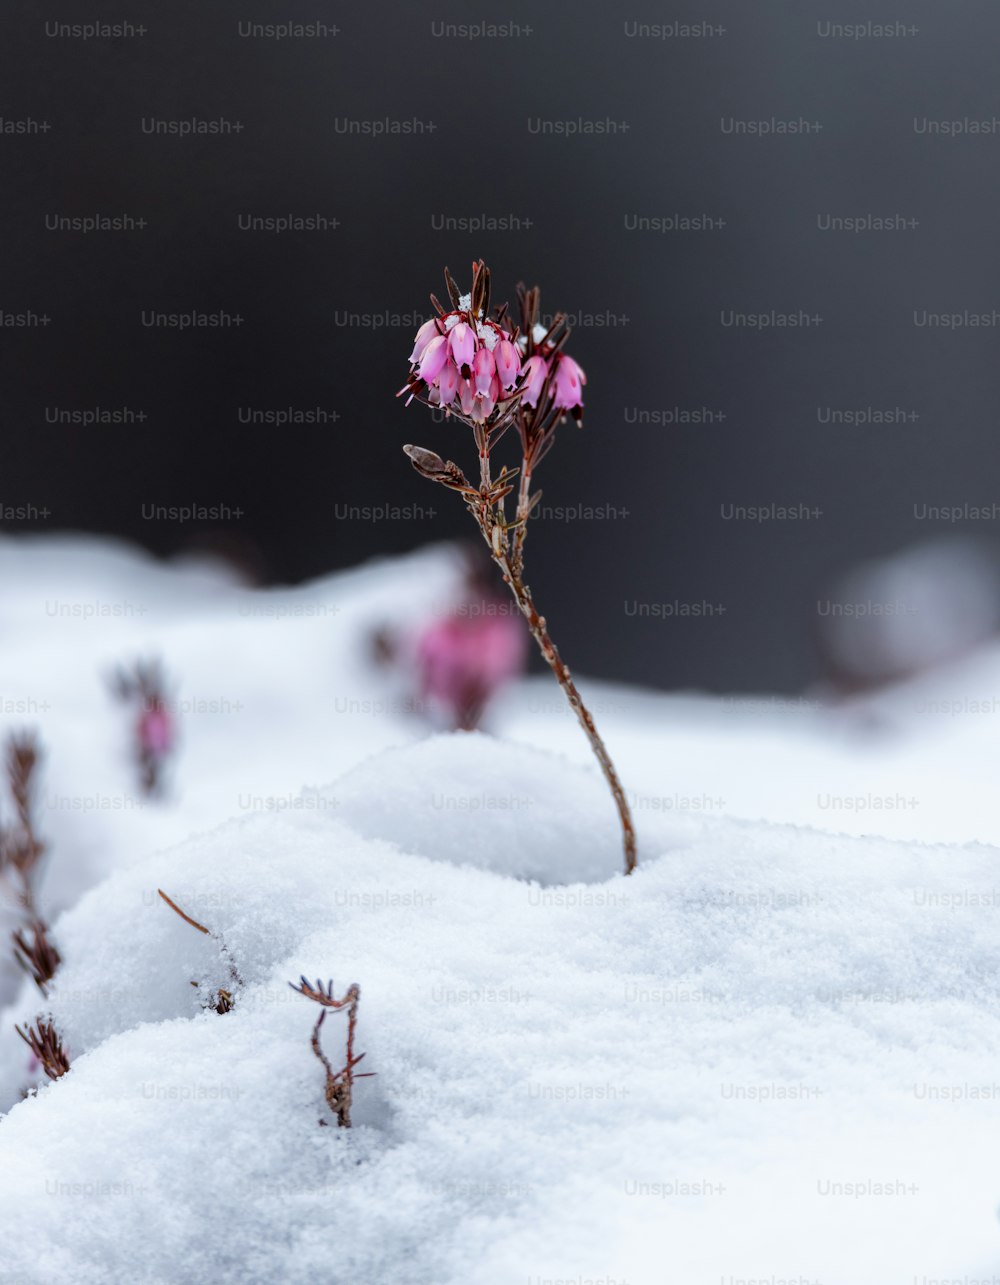 Una pequeña flor rosada que sobresale de la nieve